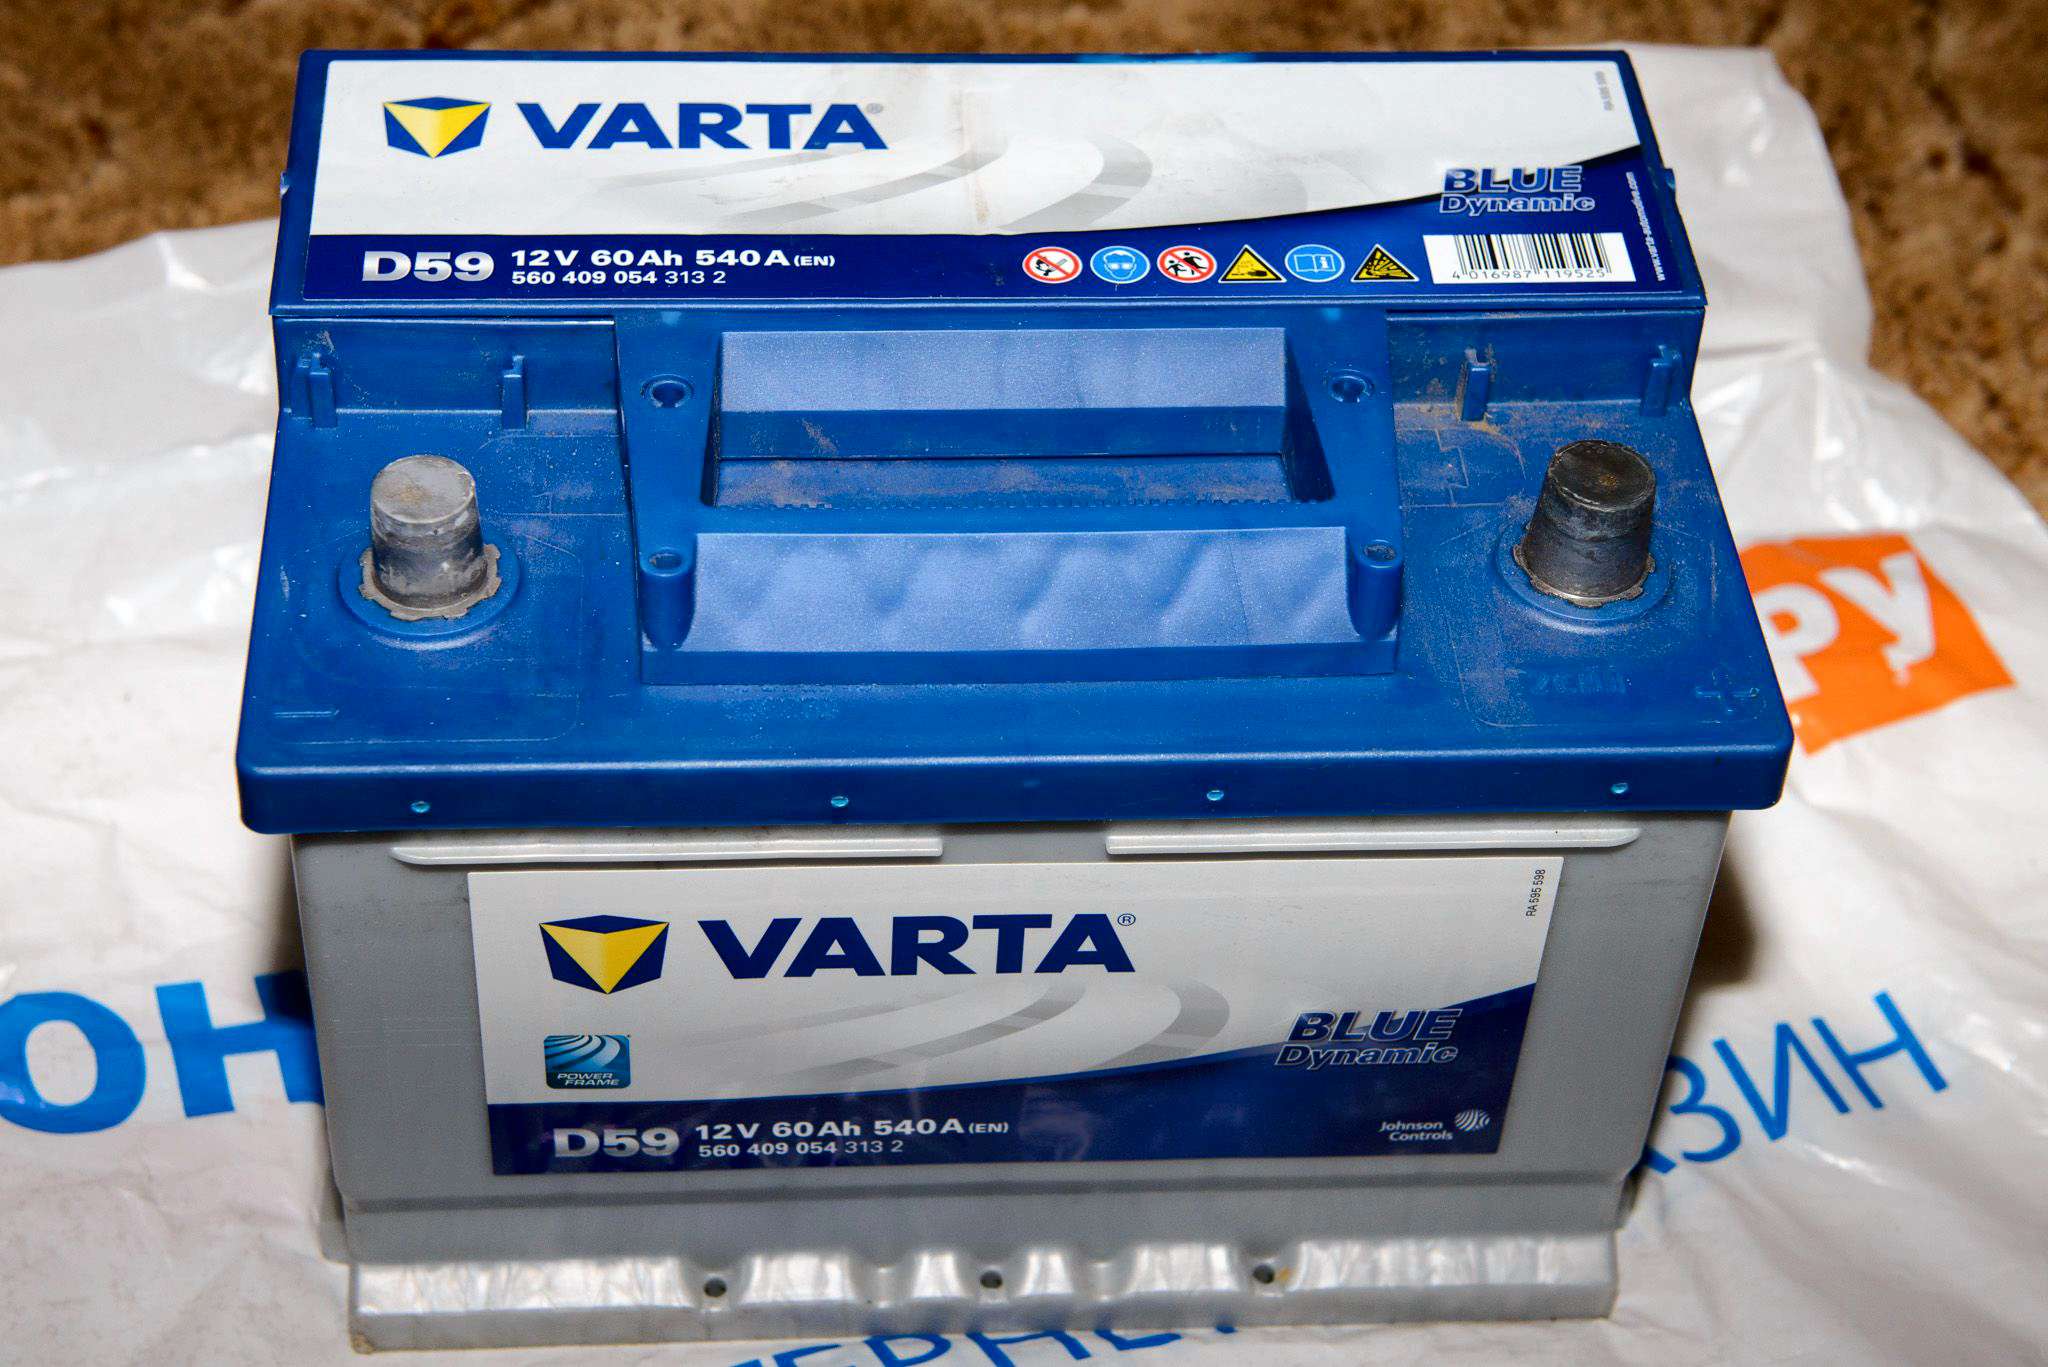 Купить аккумулятор VARTA D59 Blue Dynamic 560 409 054, 242x175x175,  обратная полярность, 60 Ач 560 409 054 D59 в интернет-магазине ОНЛАЙН  ТРЕЙД.РУ